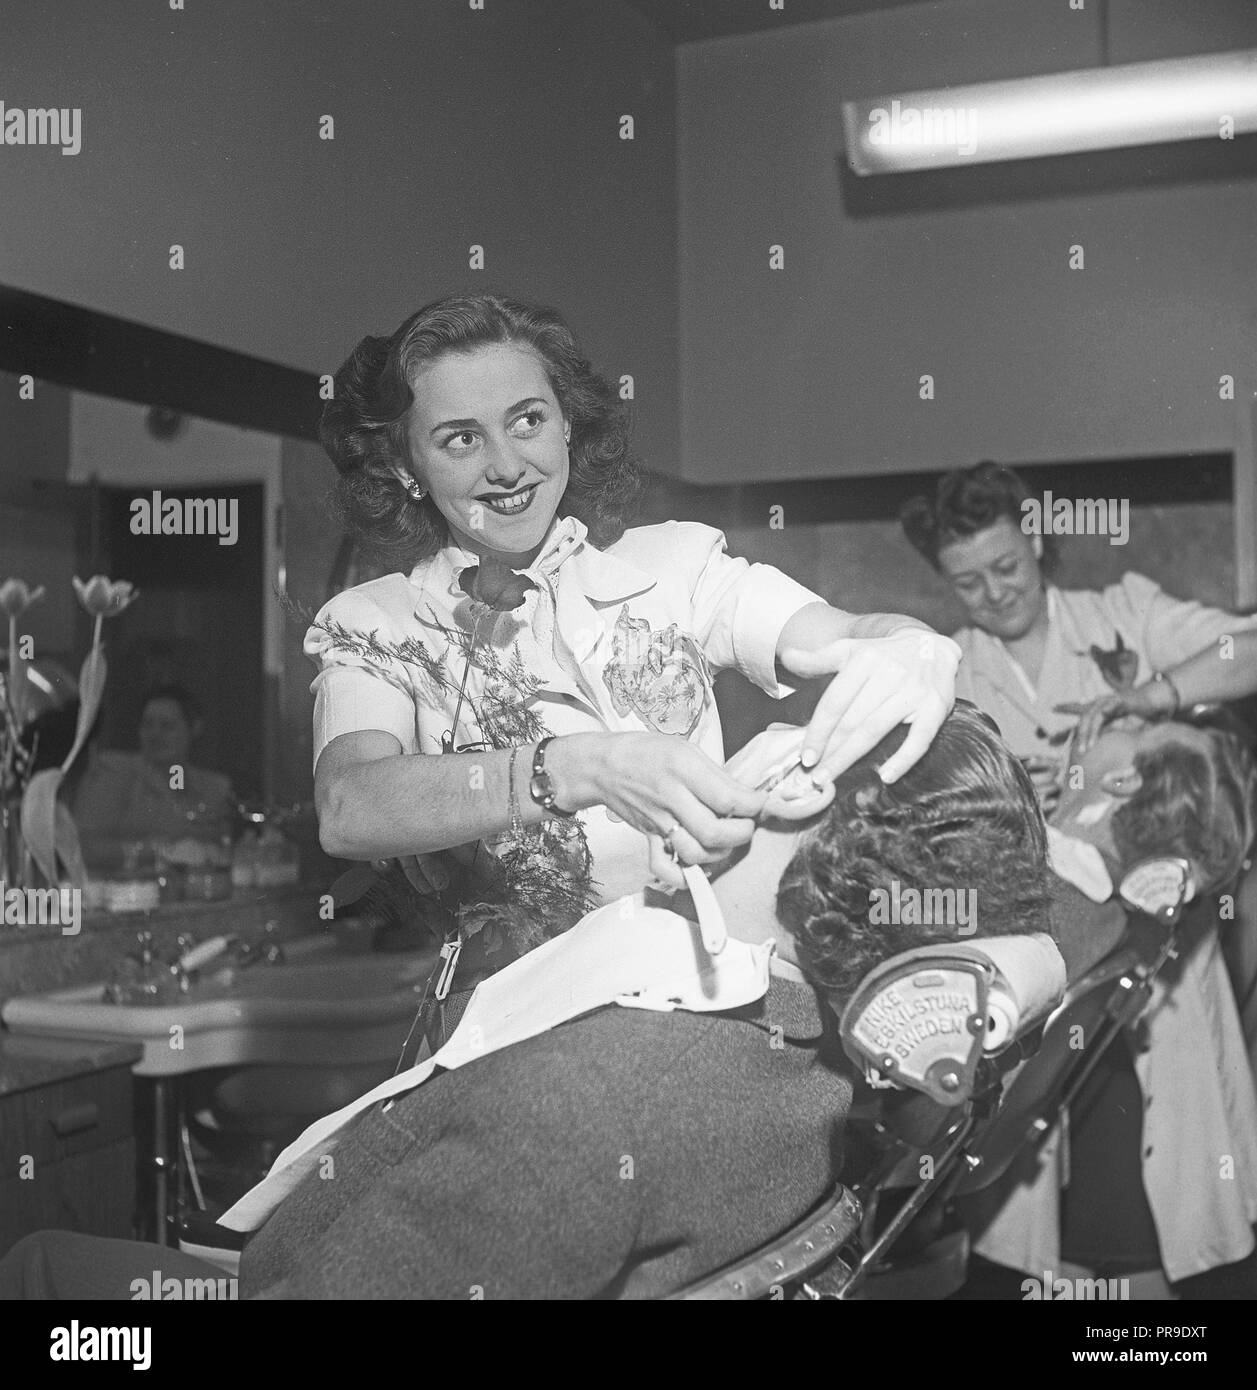 Obtener un afeitado en la década de 1940. Una joven es un hombre afeitado en la barbería. Ella usa una maquinilla de afeitar y recta es retratada aquí mientras afeitado cuidadosamente cerca de la oreja del hombre. Suecia 1940. Foto Kristoffersson ref un48-1 Foto de stock